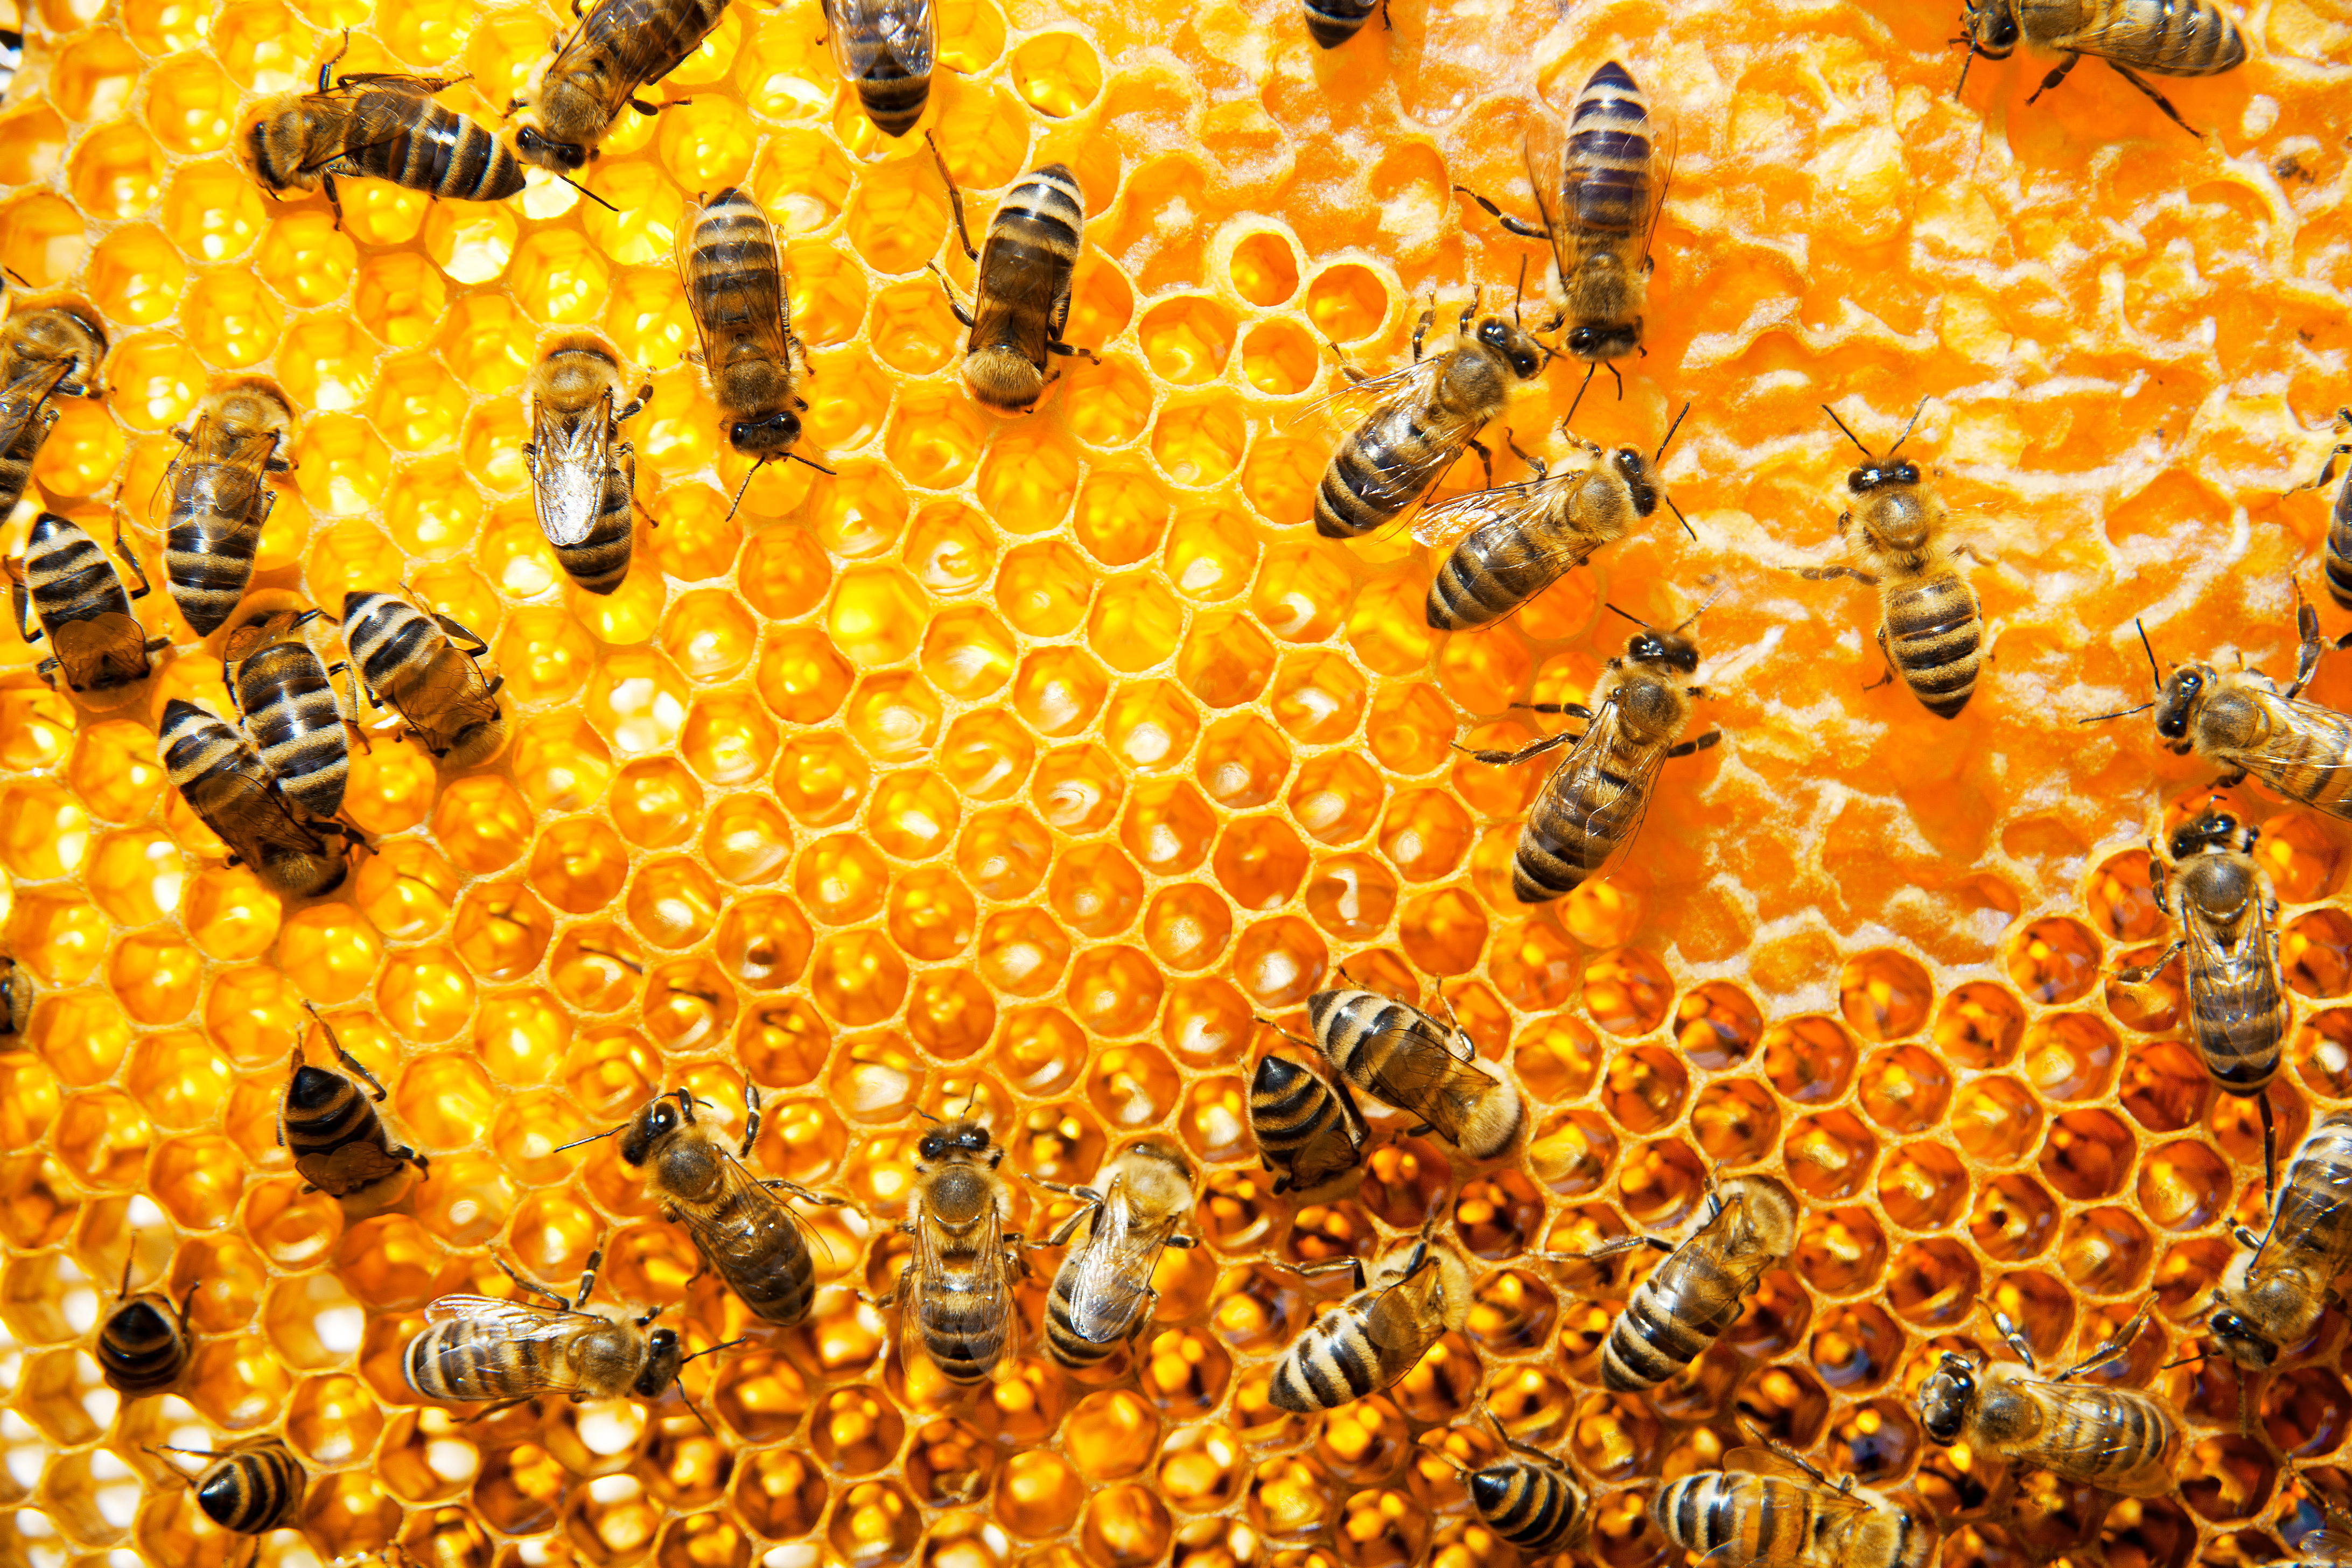 Medidas que podemos contribuir para salvar a las abejas